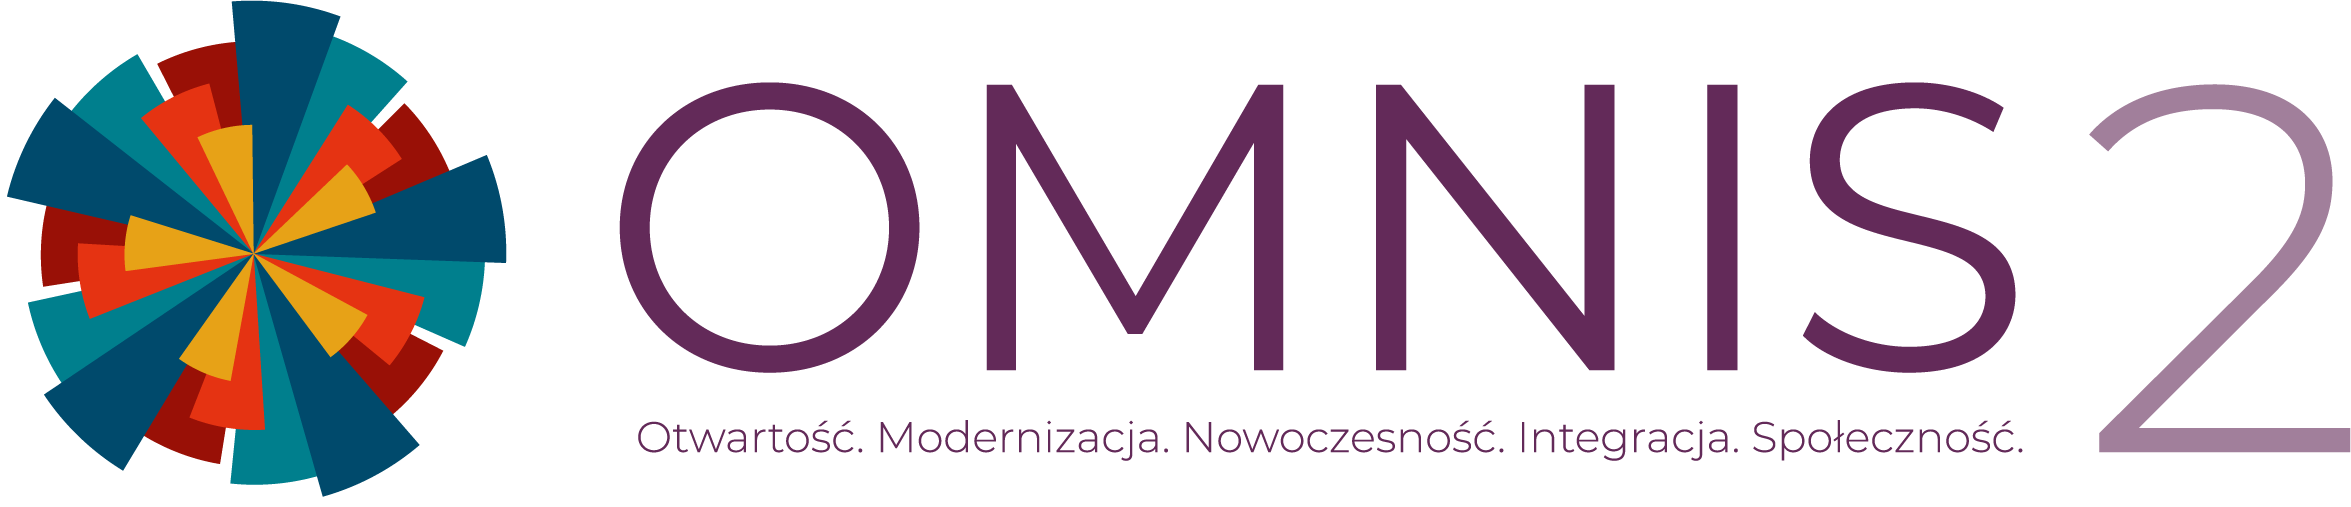 Logo z nazwą i rozwinięciem skrótu
– wielobarwna rozeta, ze skrótem nazwy oraz z rozwinięciem nazwy projektu po prawej stronie